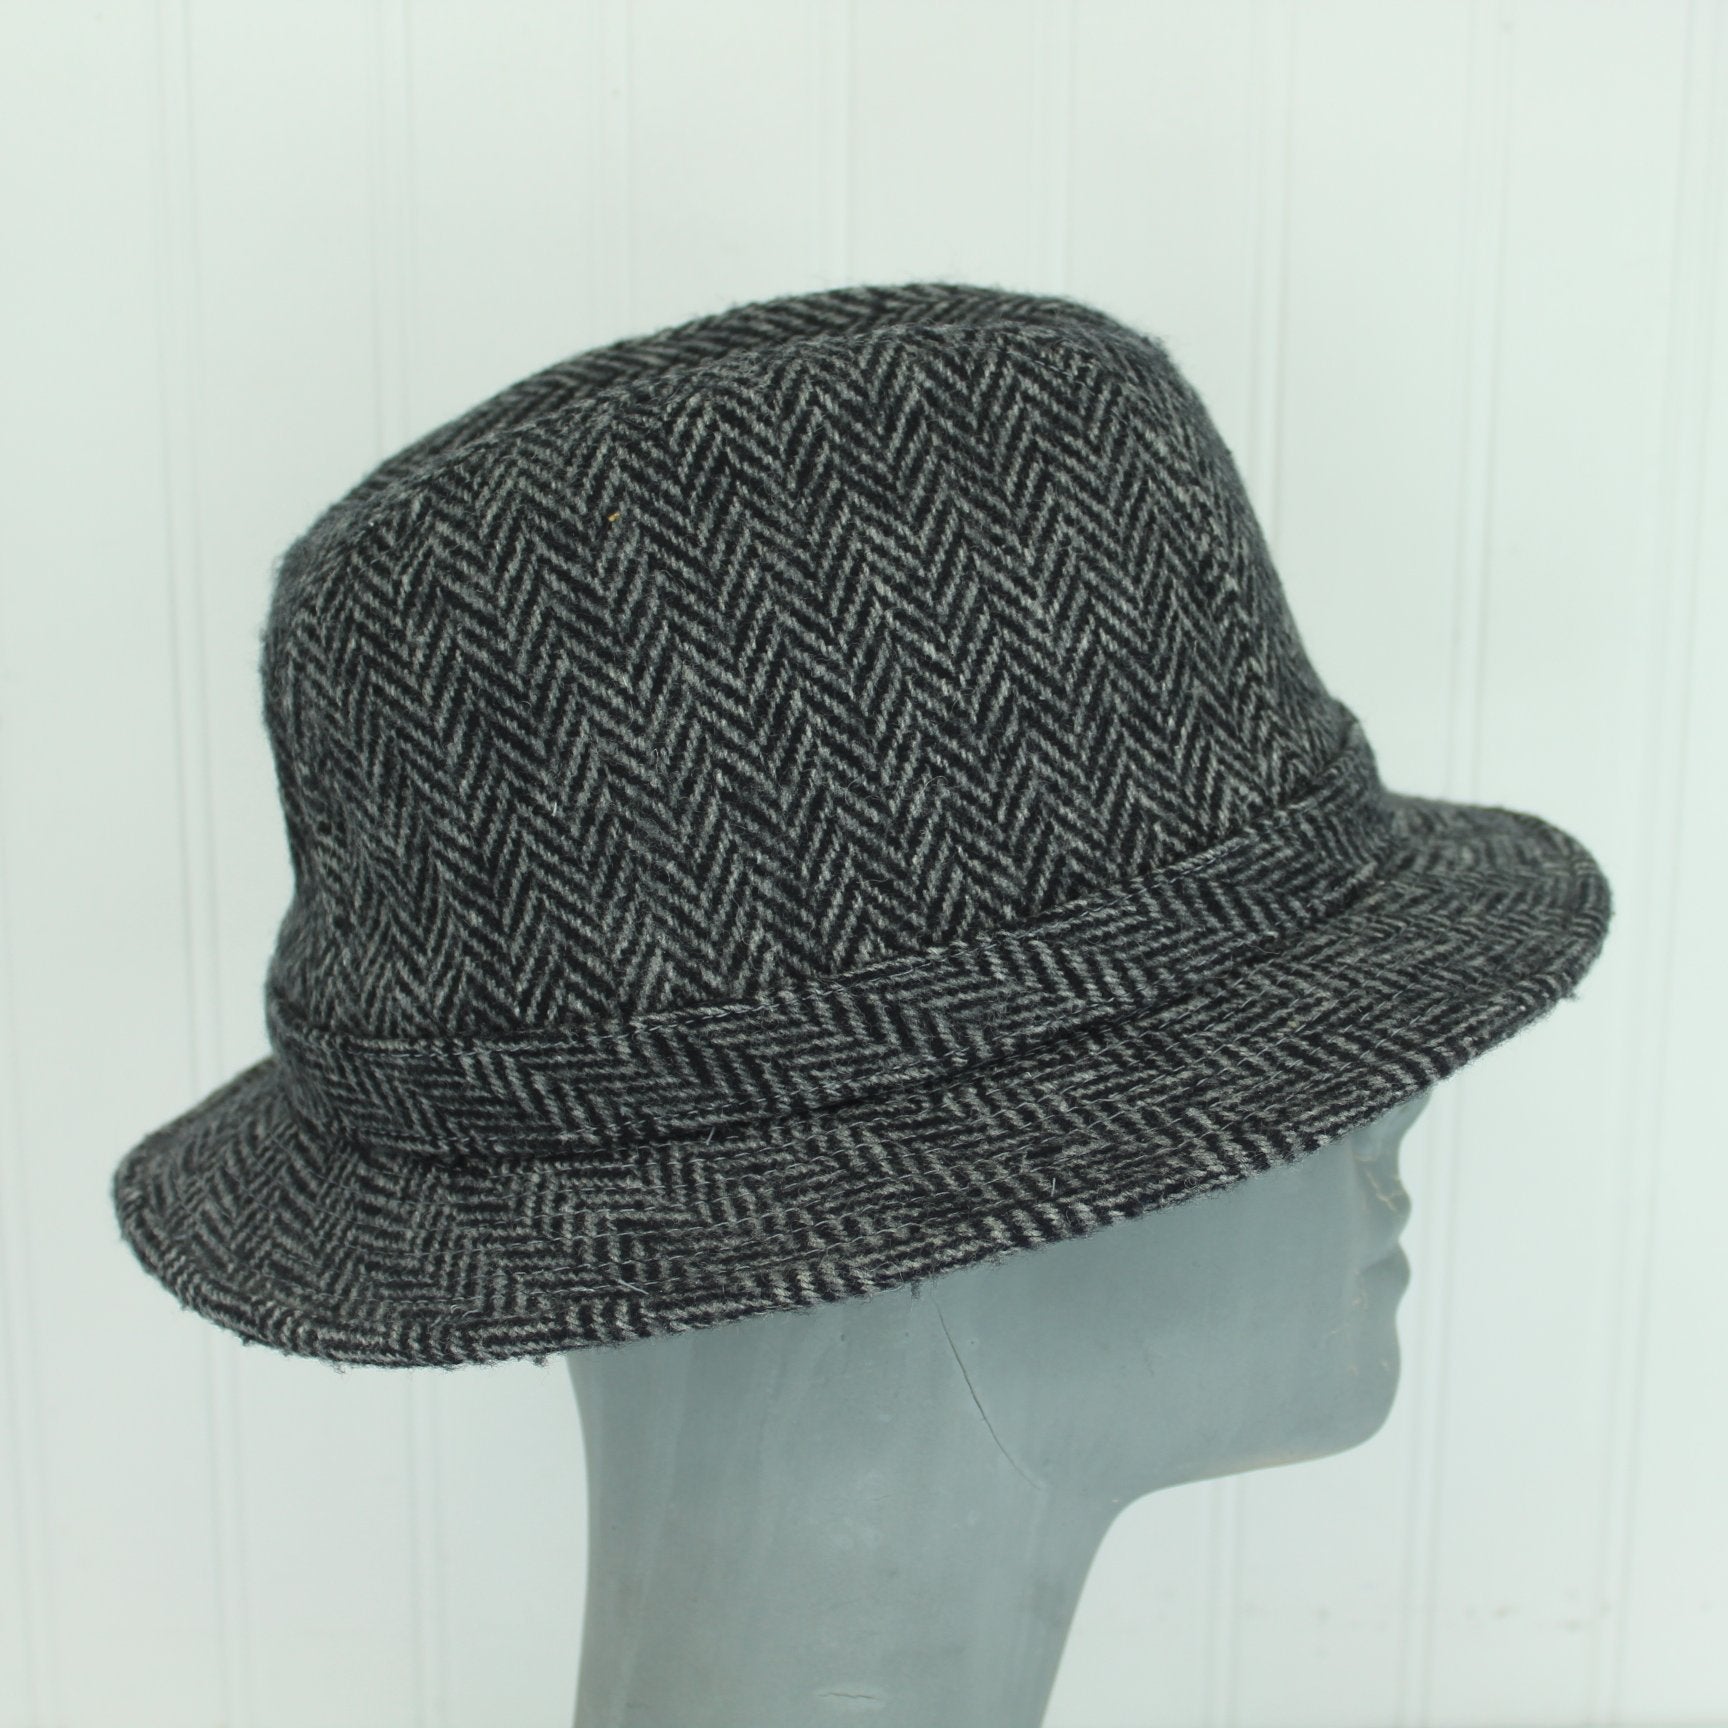 Dorfman Pacific Scala Hat Black Grey Herringbone Wool Blend side view